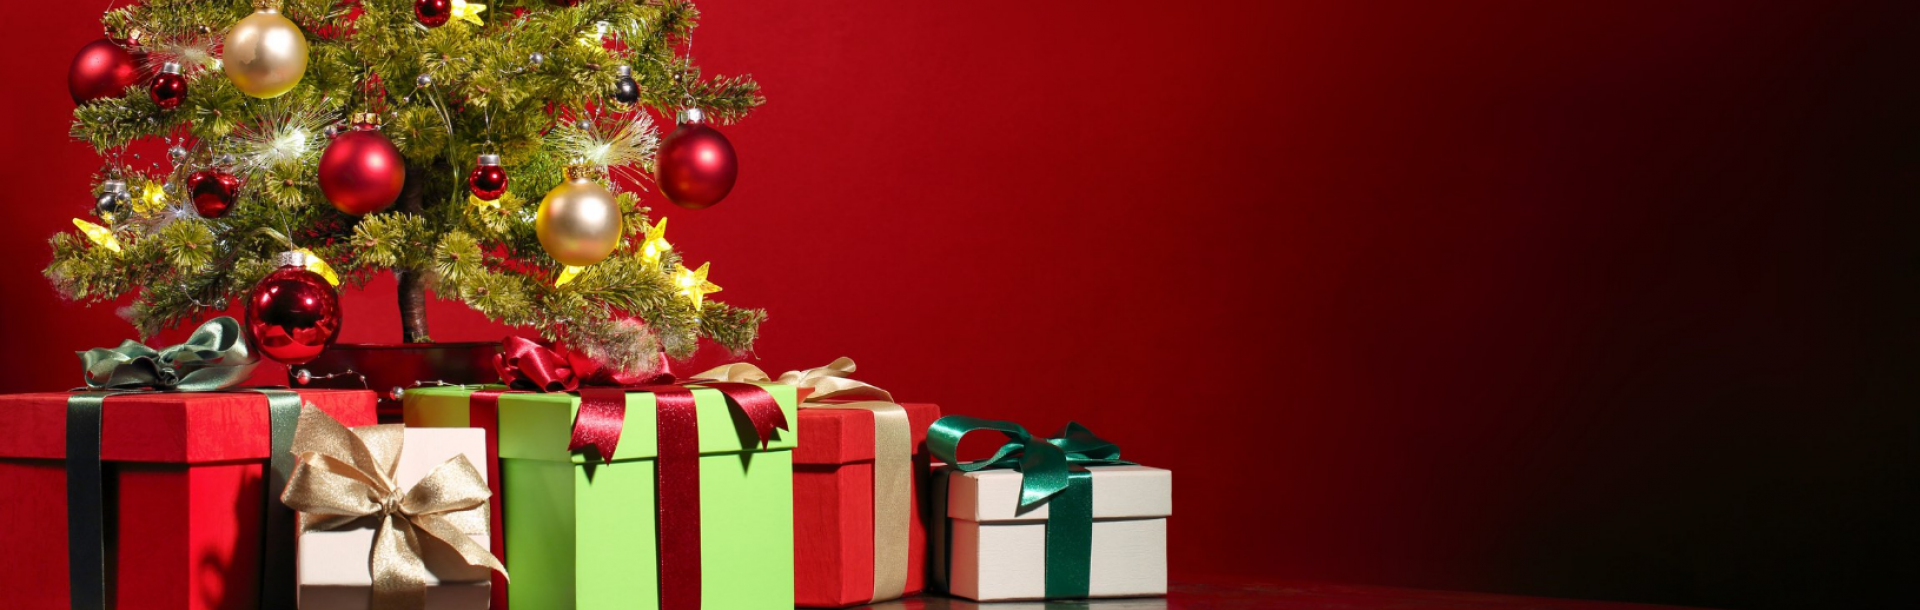 הפקולטה לרפואה מאחלת: Merry Christmas         חג מולד שמח